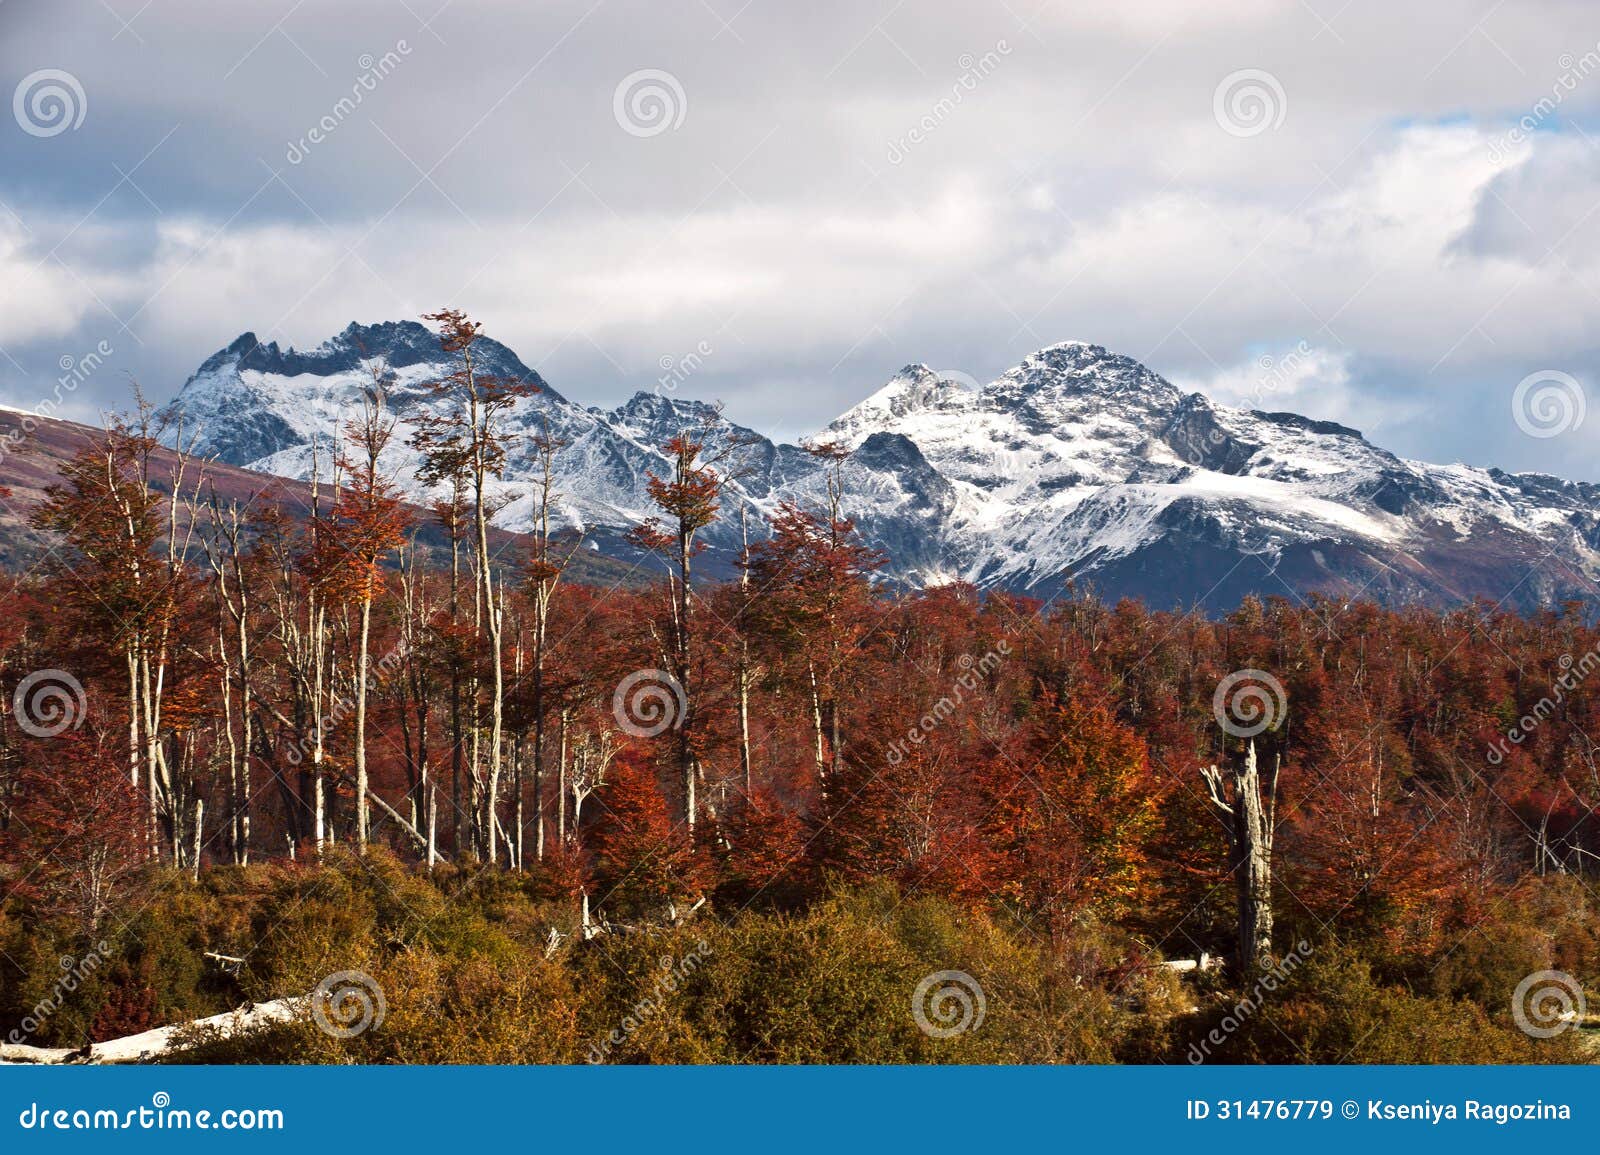 autumn in patagonia. cordillera darwin, tierra del fuego